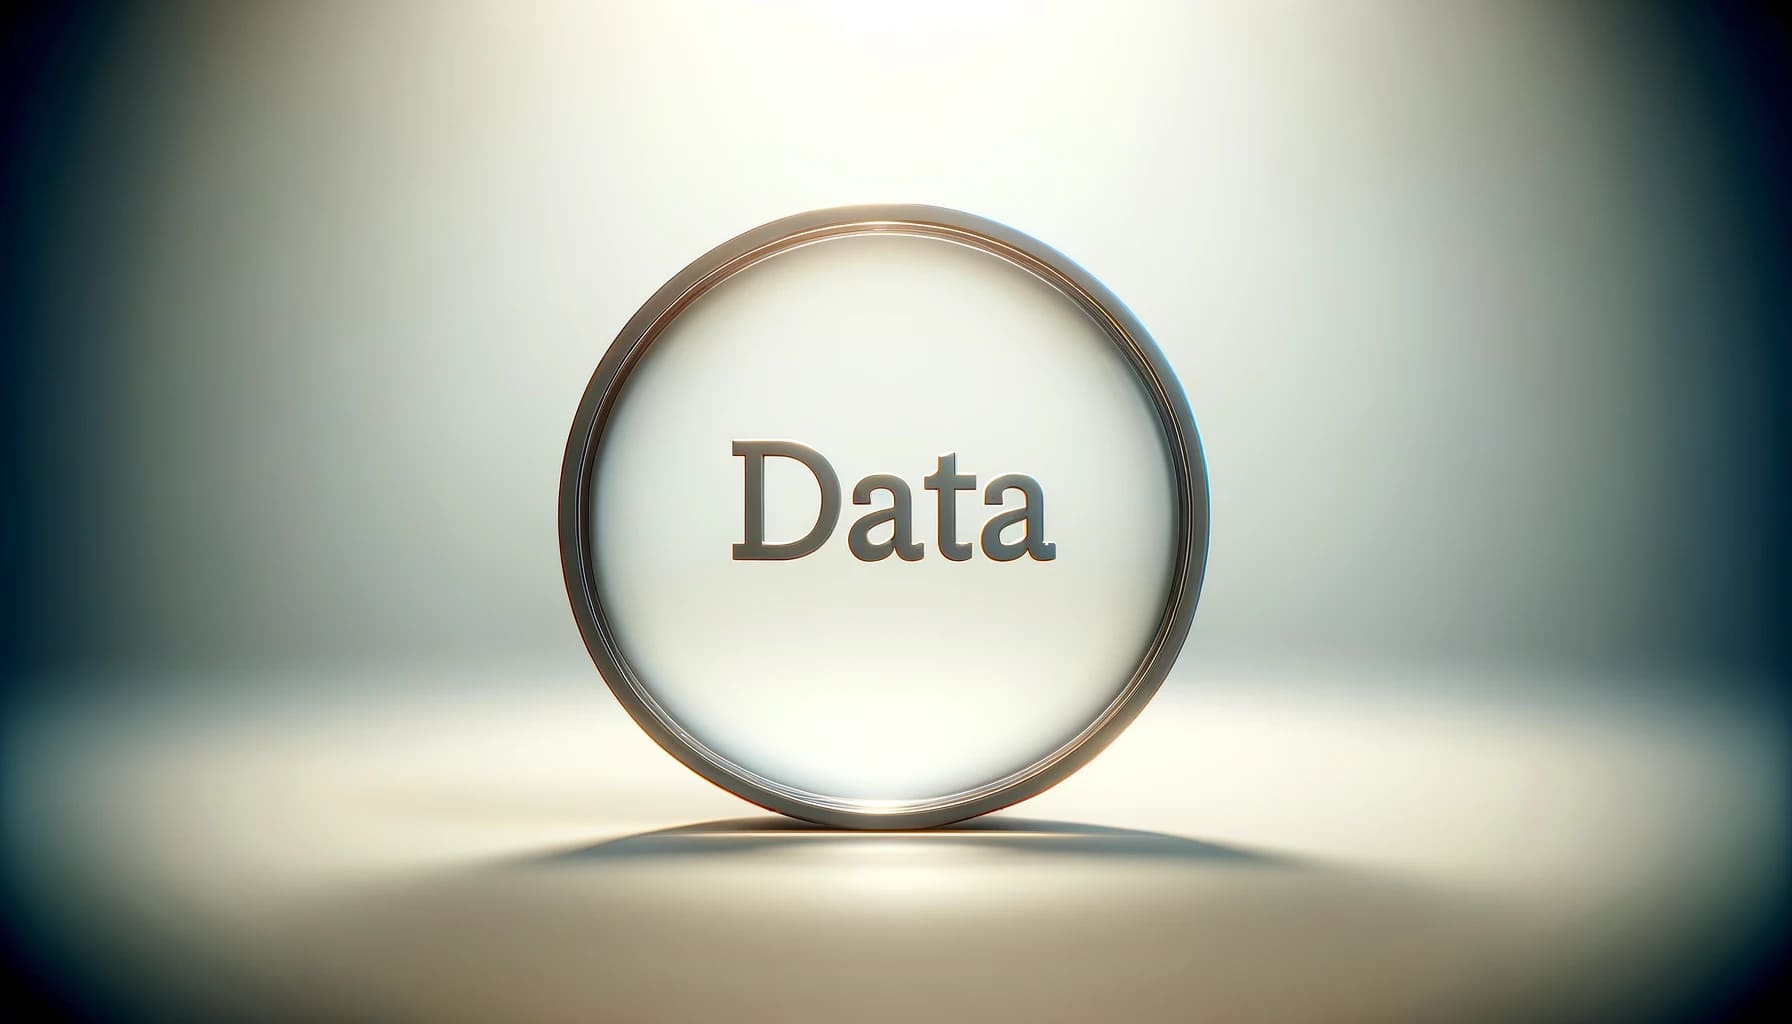 Data-Warehousing